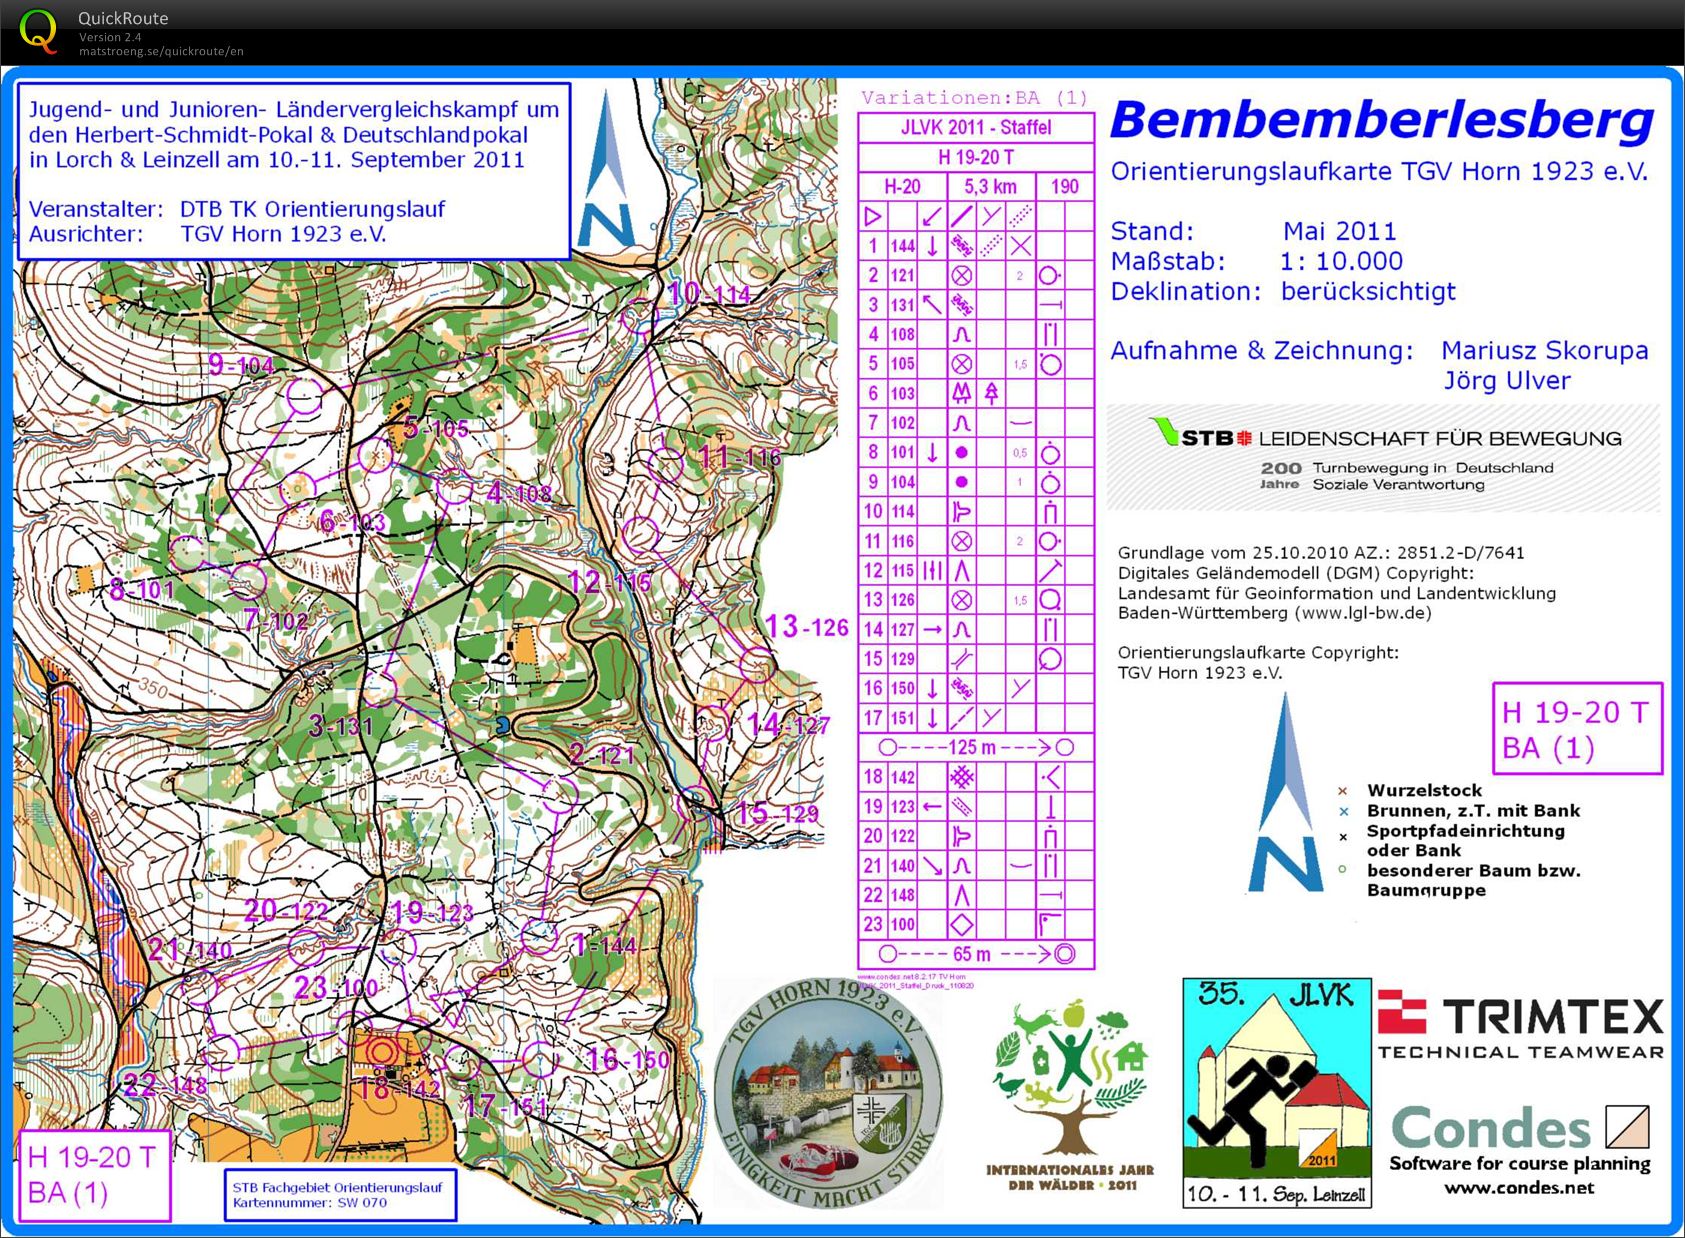 Training Bemberlesberg (2011 JLVK-Relay) (01.04.2012)